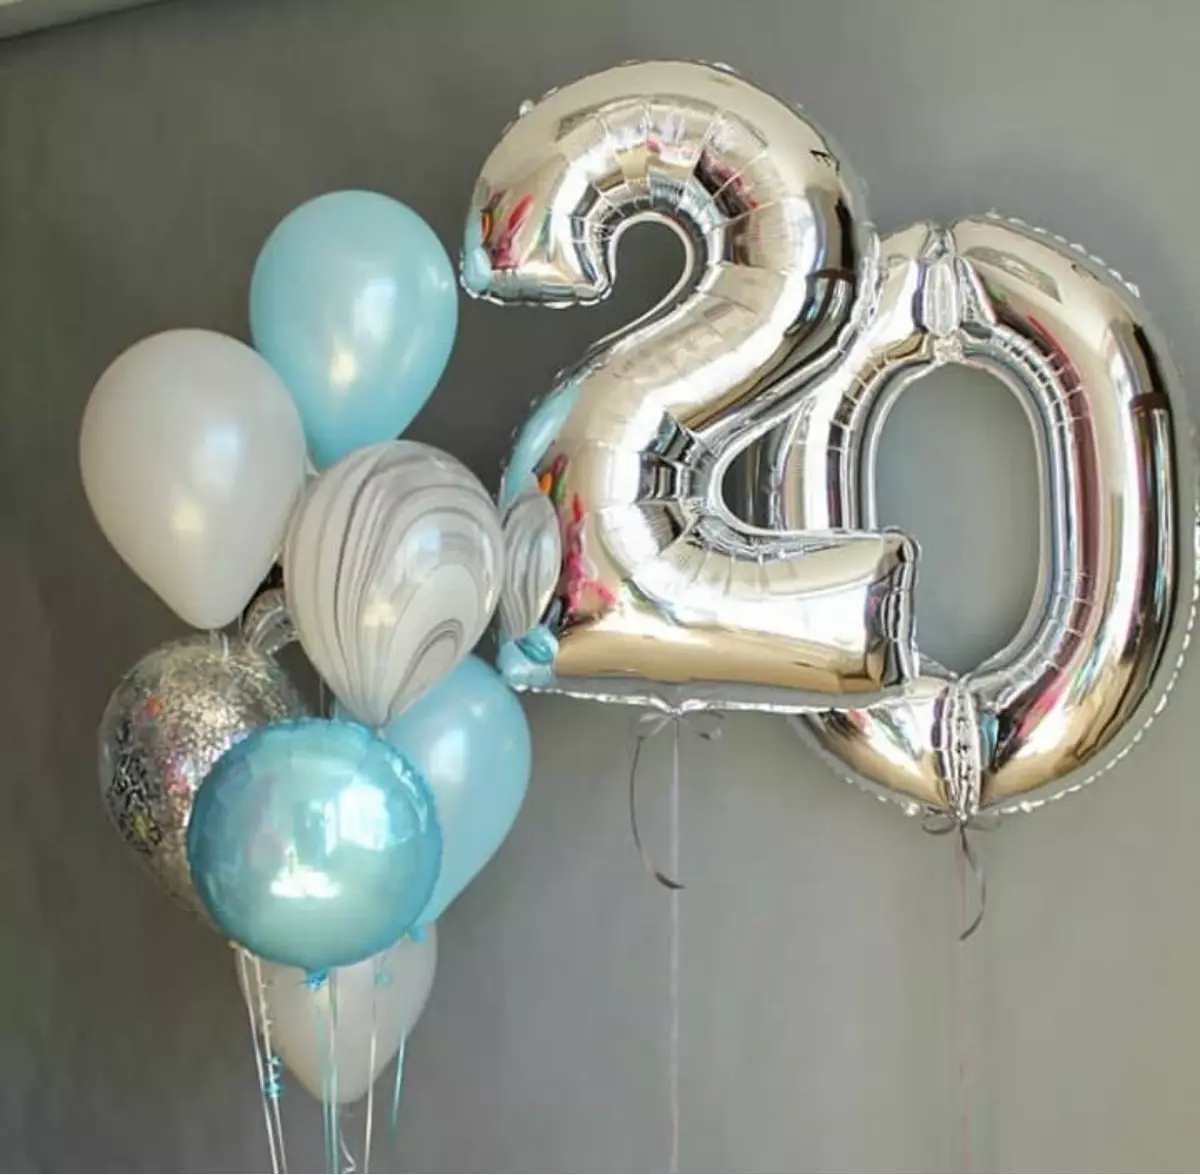 Dekoracija dvorane s loptima na godišnjicu: za ženu i muškarce na godišnjicu 50 i 60, 30 i 35, 70 godina iu drugim datumima balona 24641_46